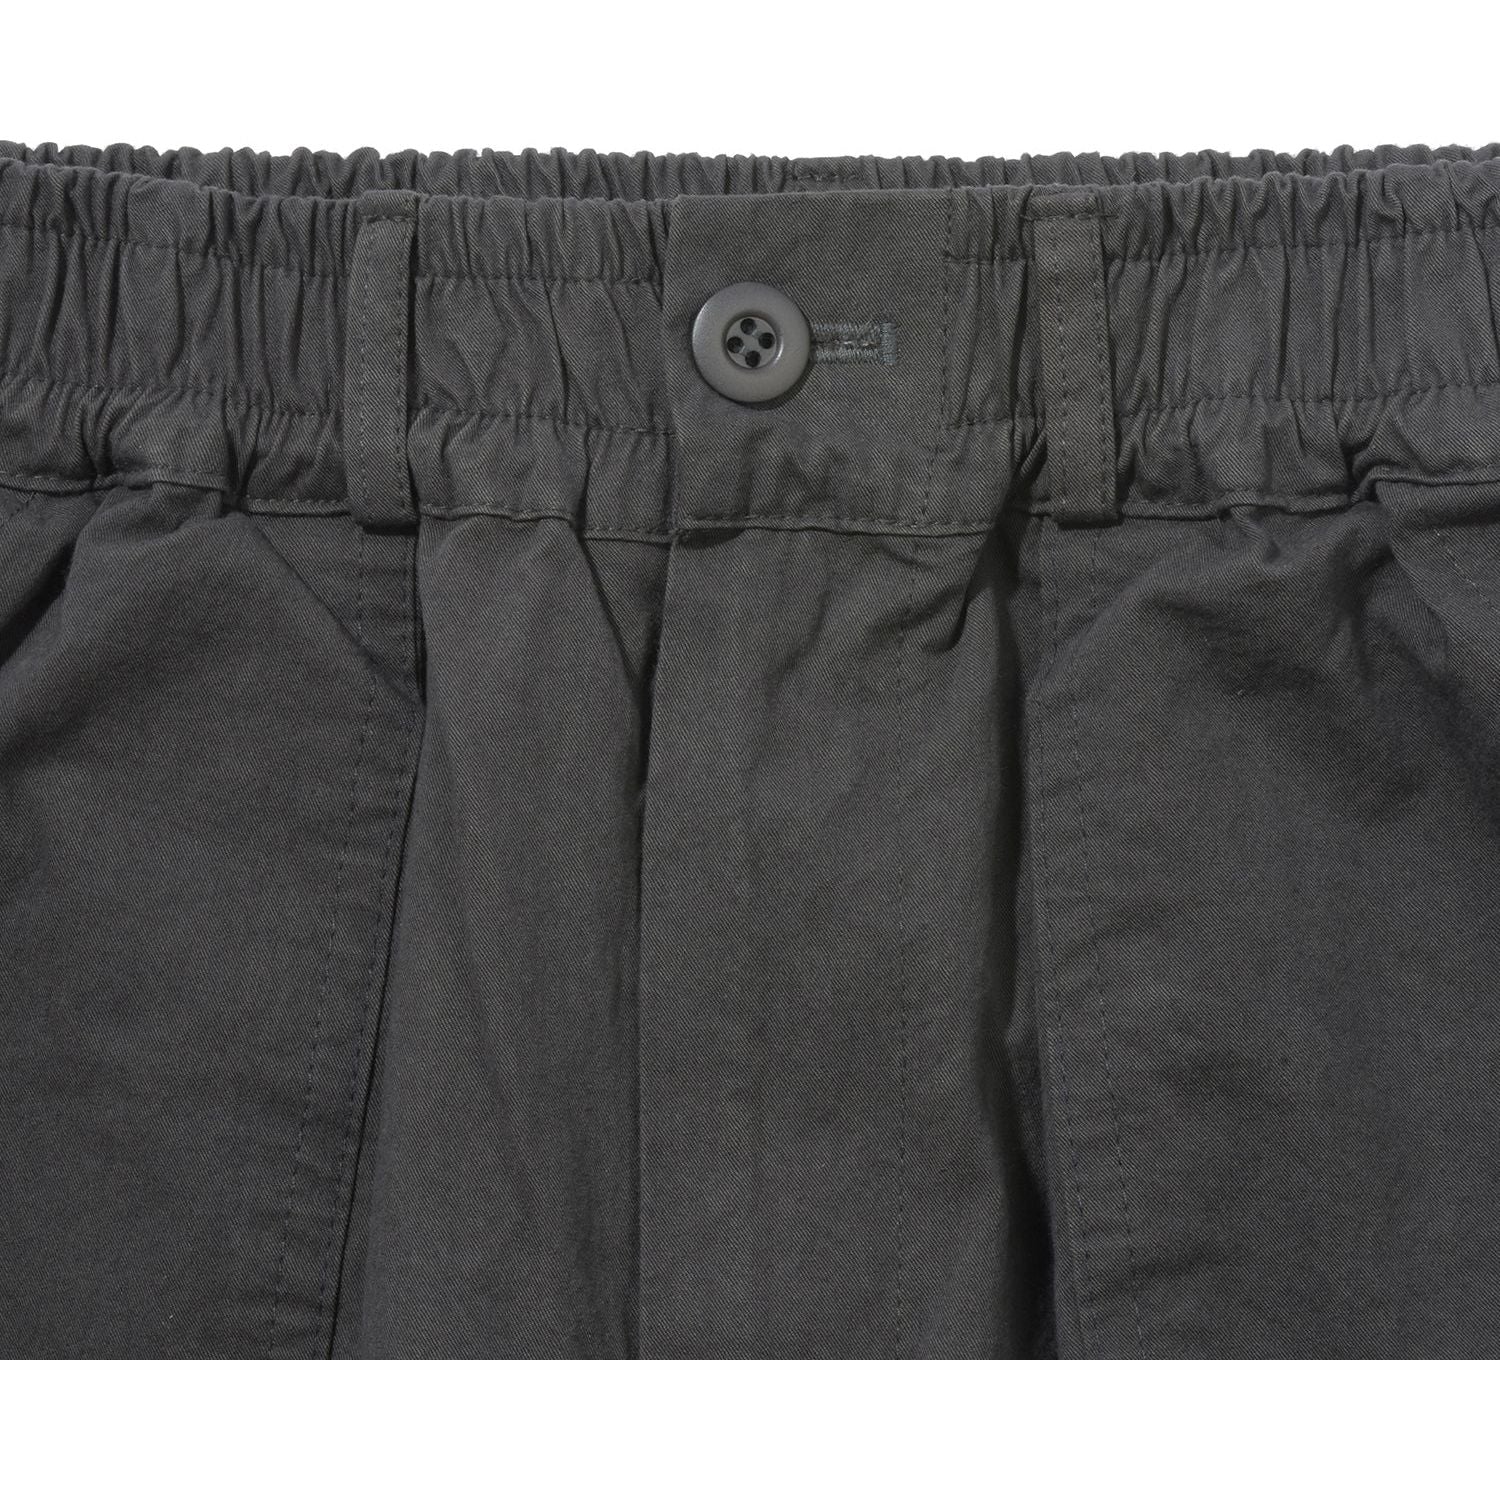 Kappy SS24 U Pants One Tuck Wide Fatigue Pants, Charcoal